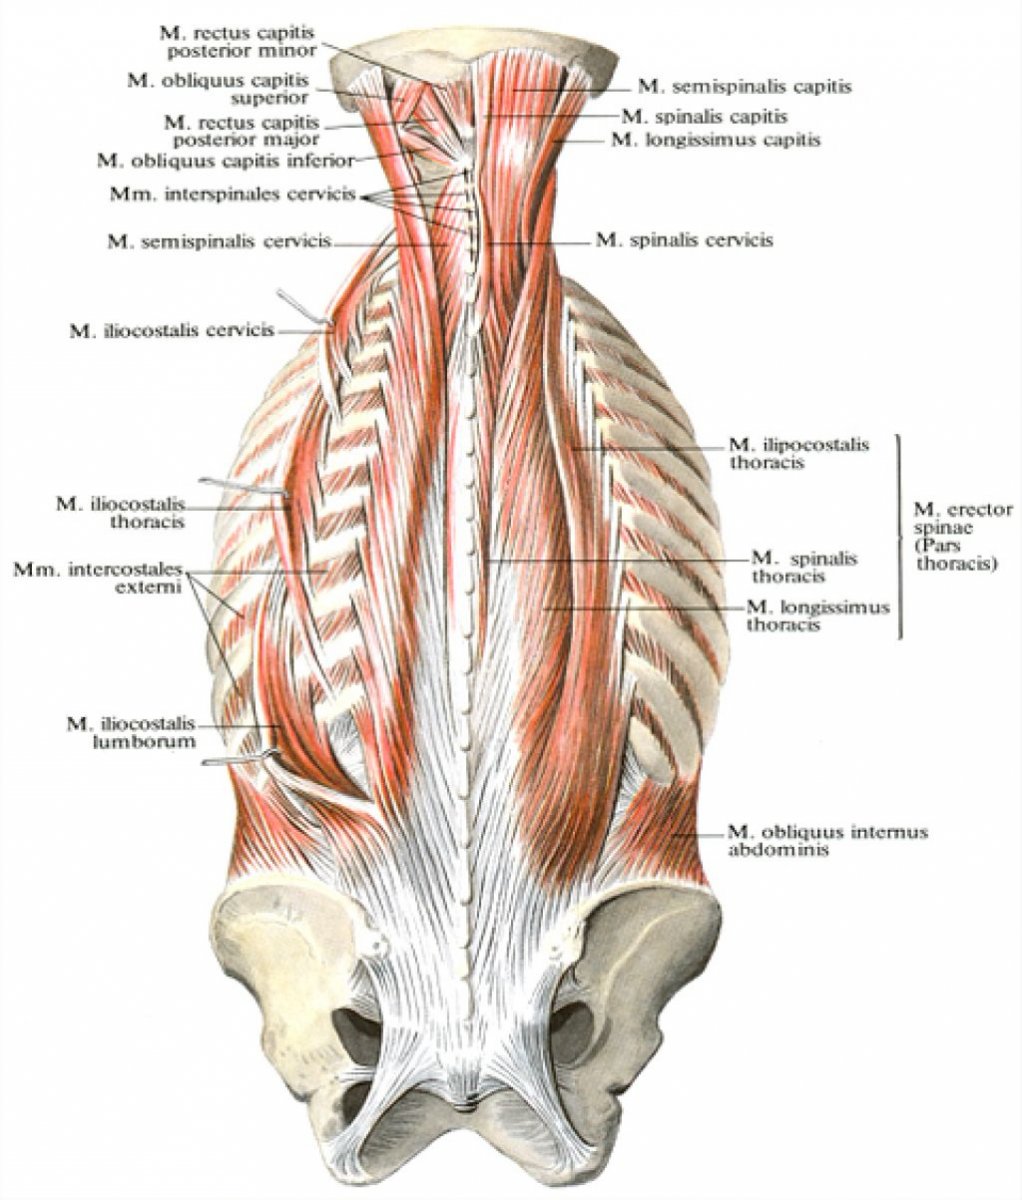 Ременная мышца головы и шеи мышцы спины